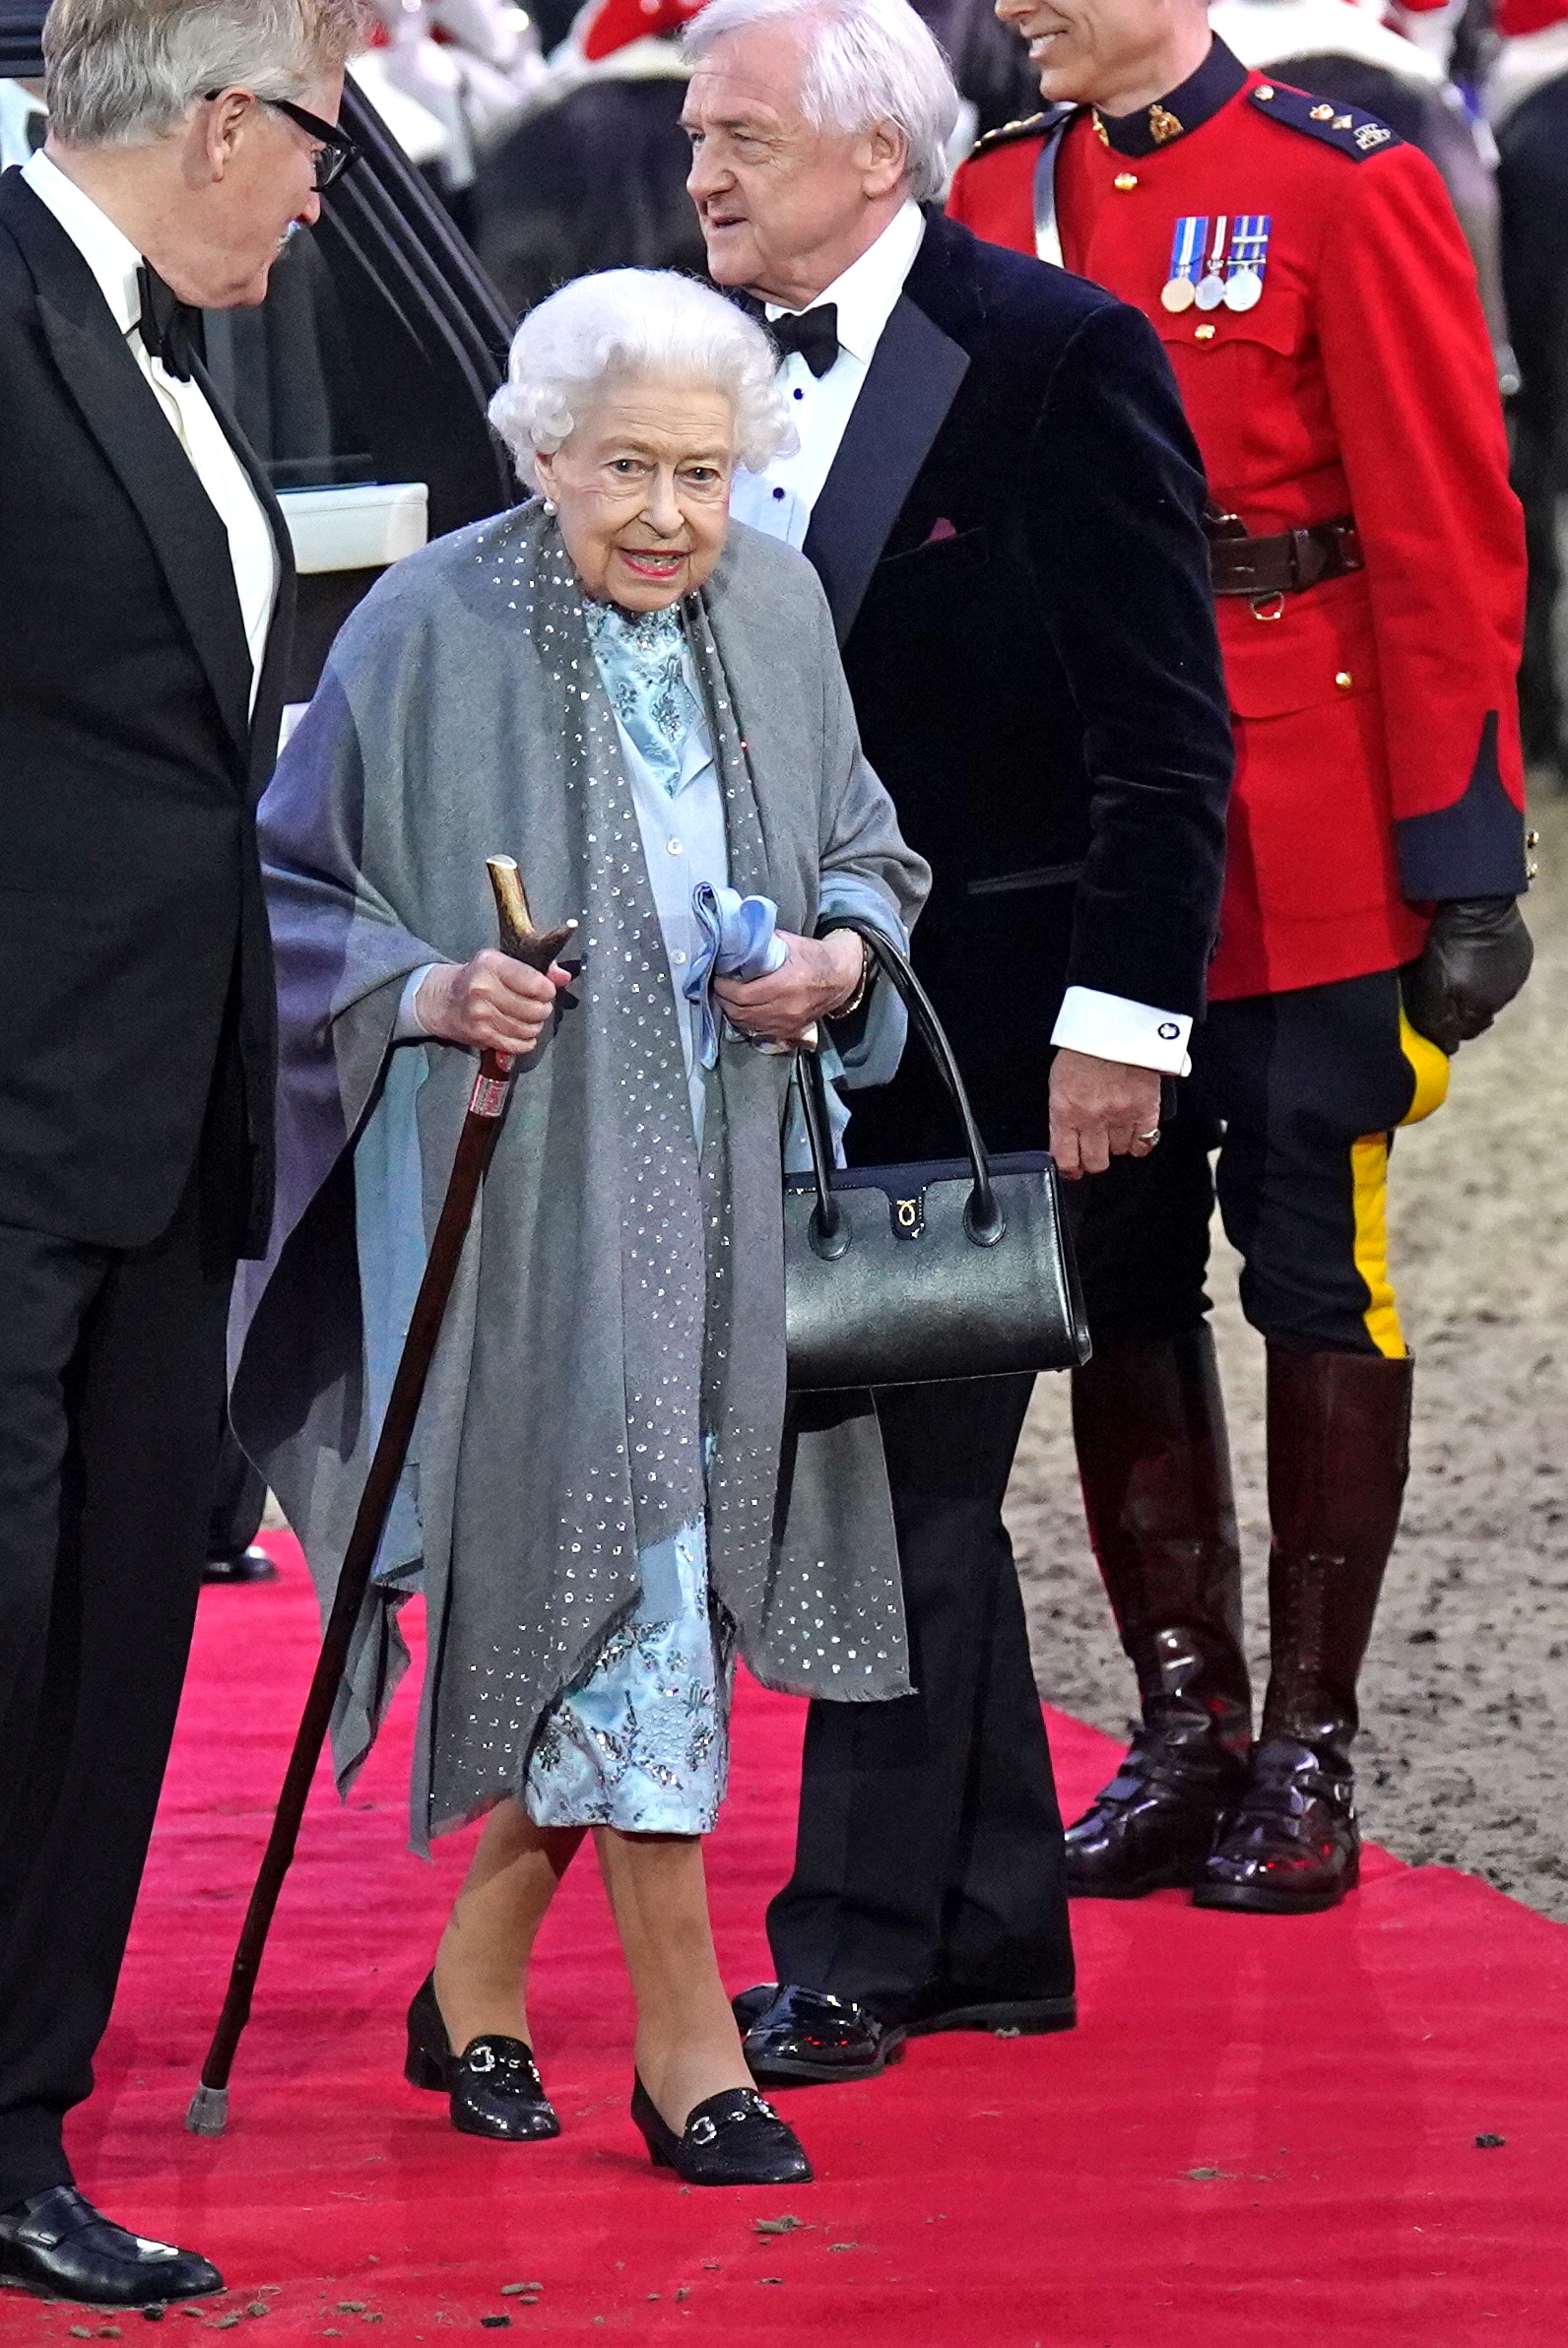 La reina Isabel de Gran Bretaña llega para la celebración "A Gallop Through History Platinum Jubilee" en el Royal Windsor Horse Show en el Castillo de Windsor, Gran Bretaña, el 15 de mayo de 2022. Steve Parsons/REUTERS